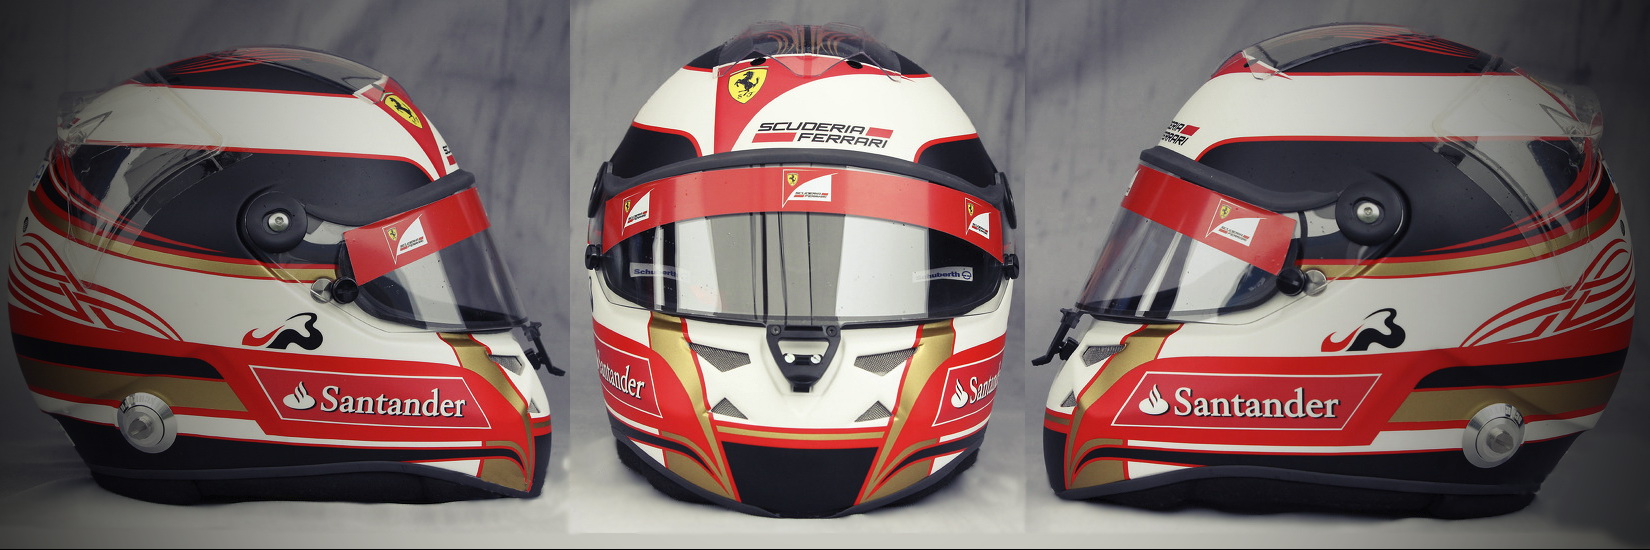 Шлем Жюля Бьянки на сезон 2011 года | 2011 helmet of Jules Bianchi